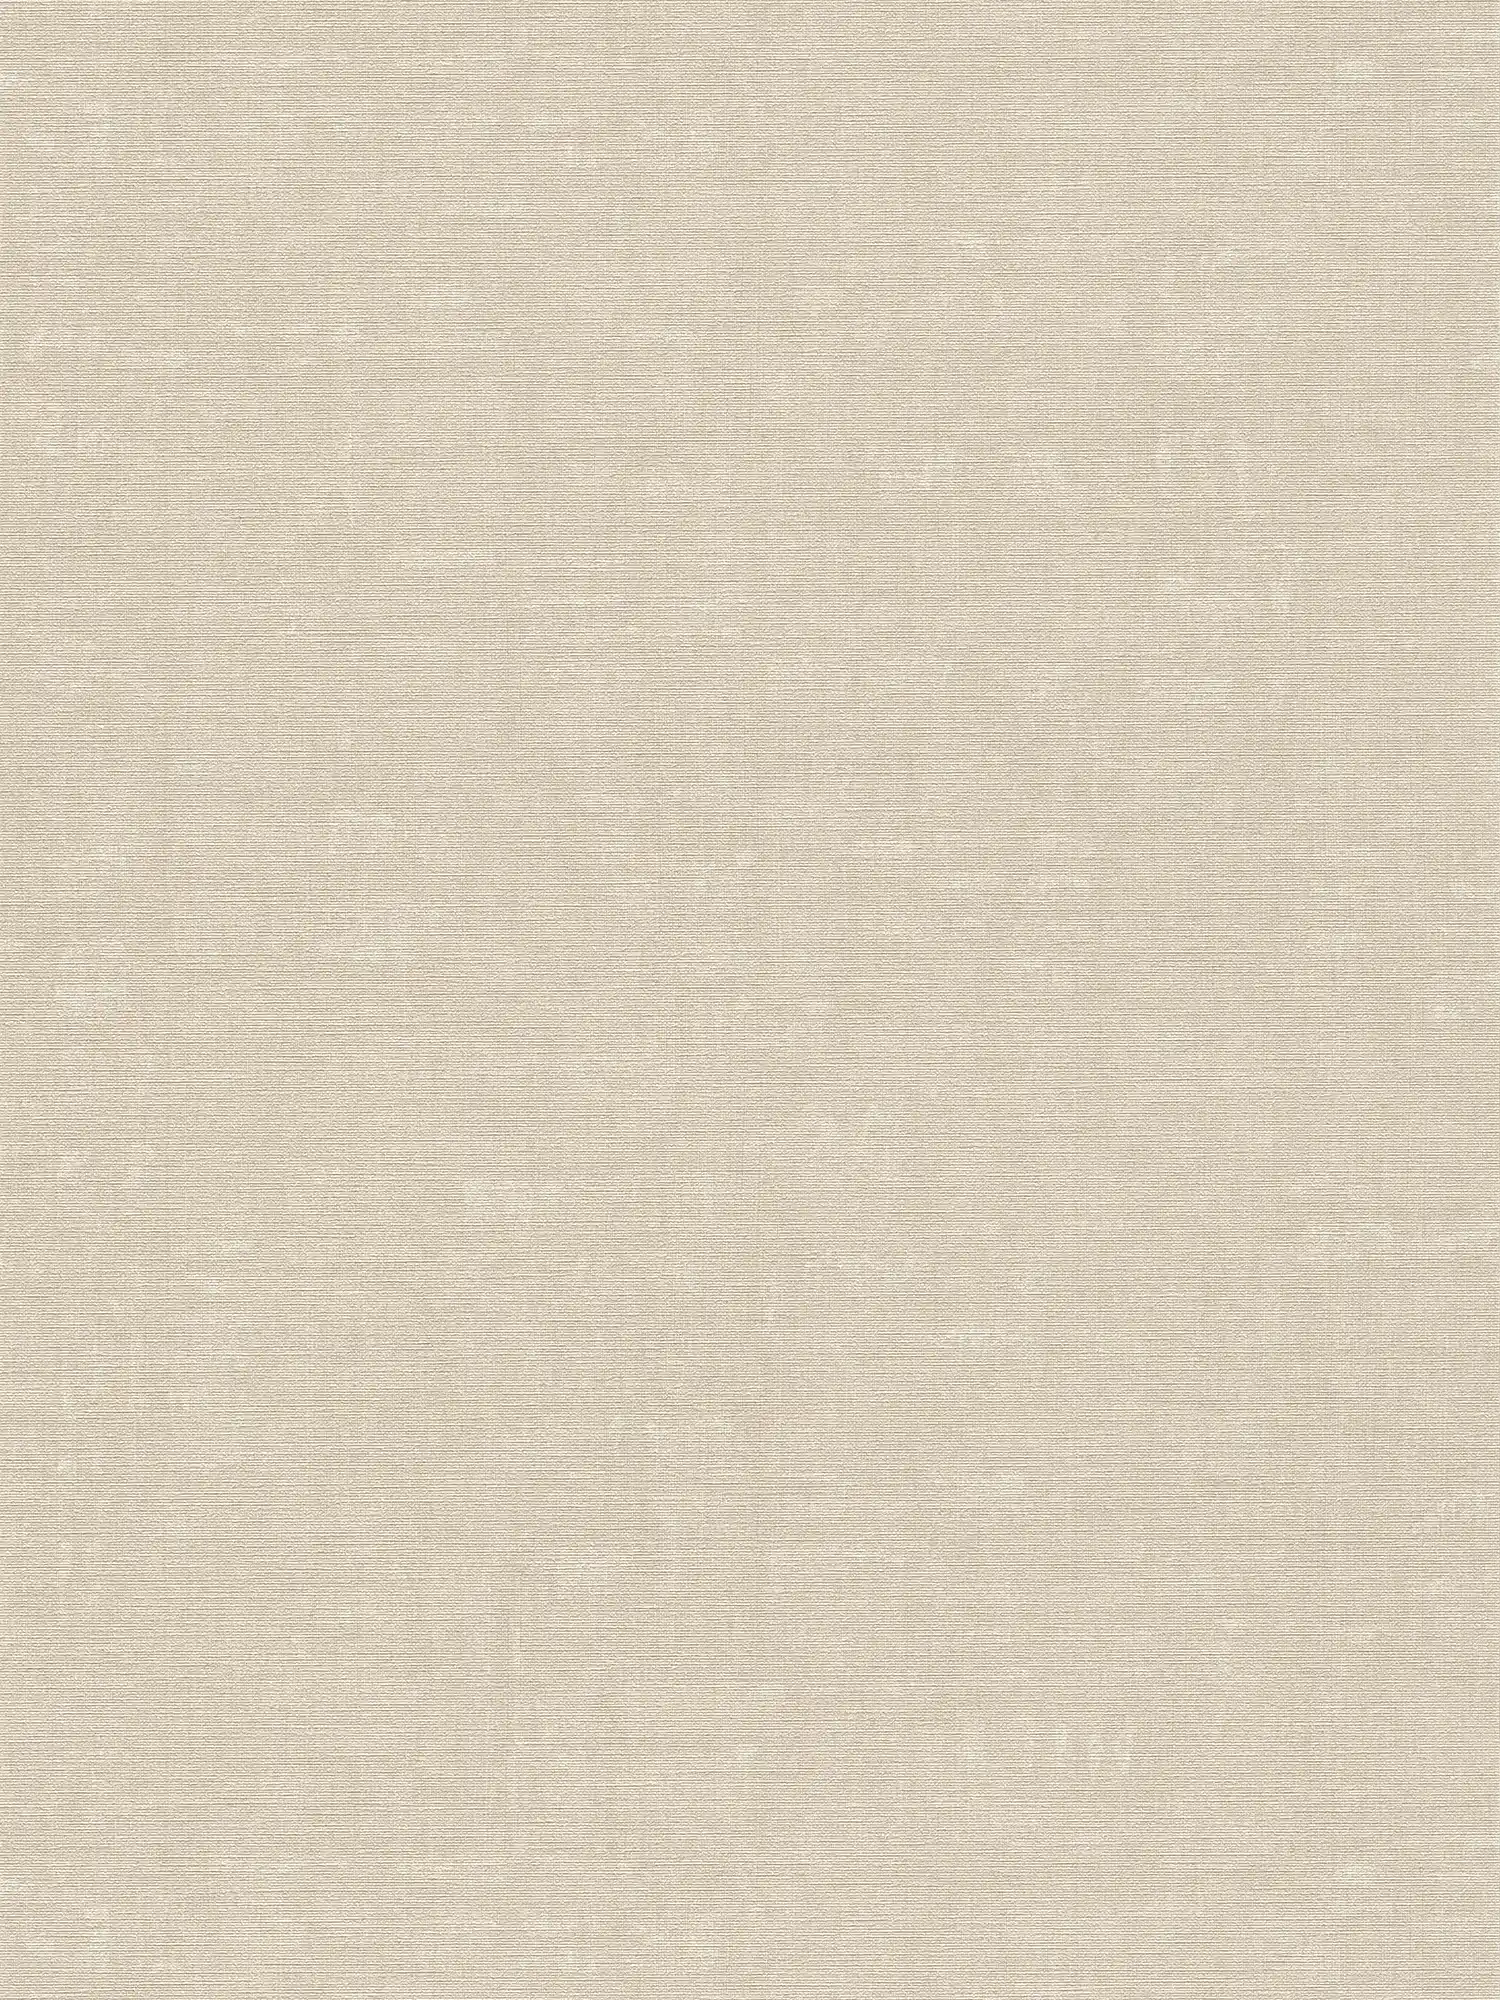 Papel pintado no tejido liso con efecto texturizado - gris, beige
